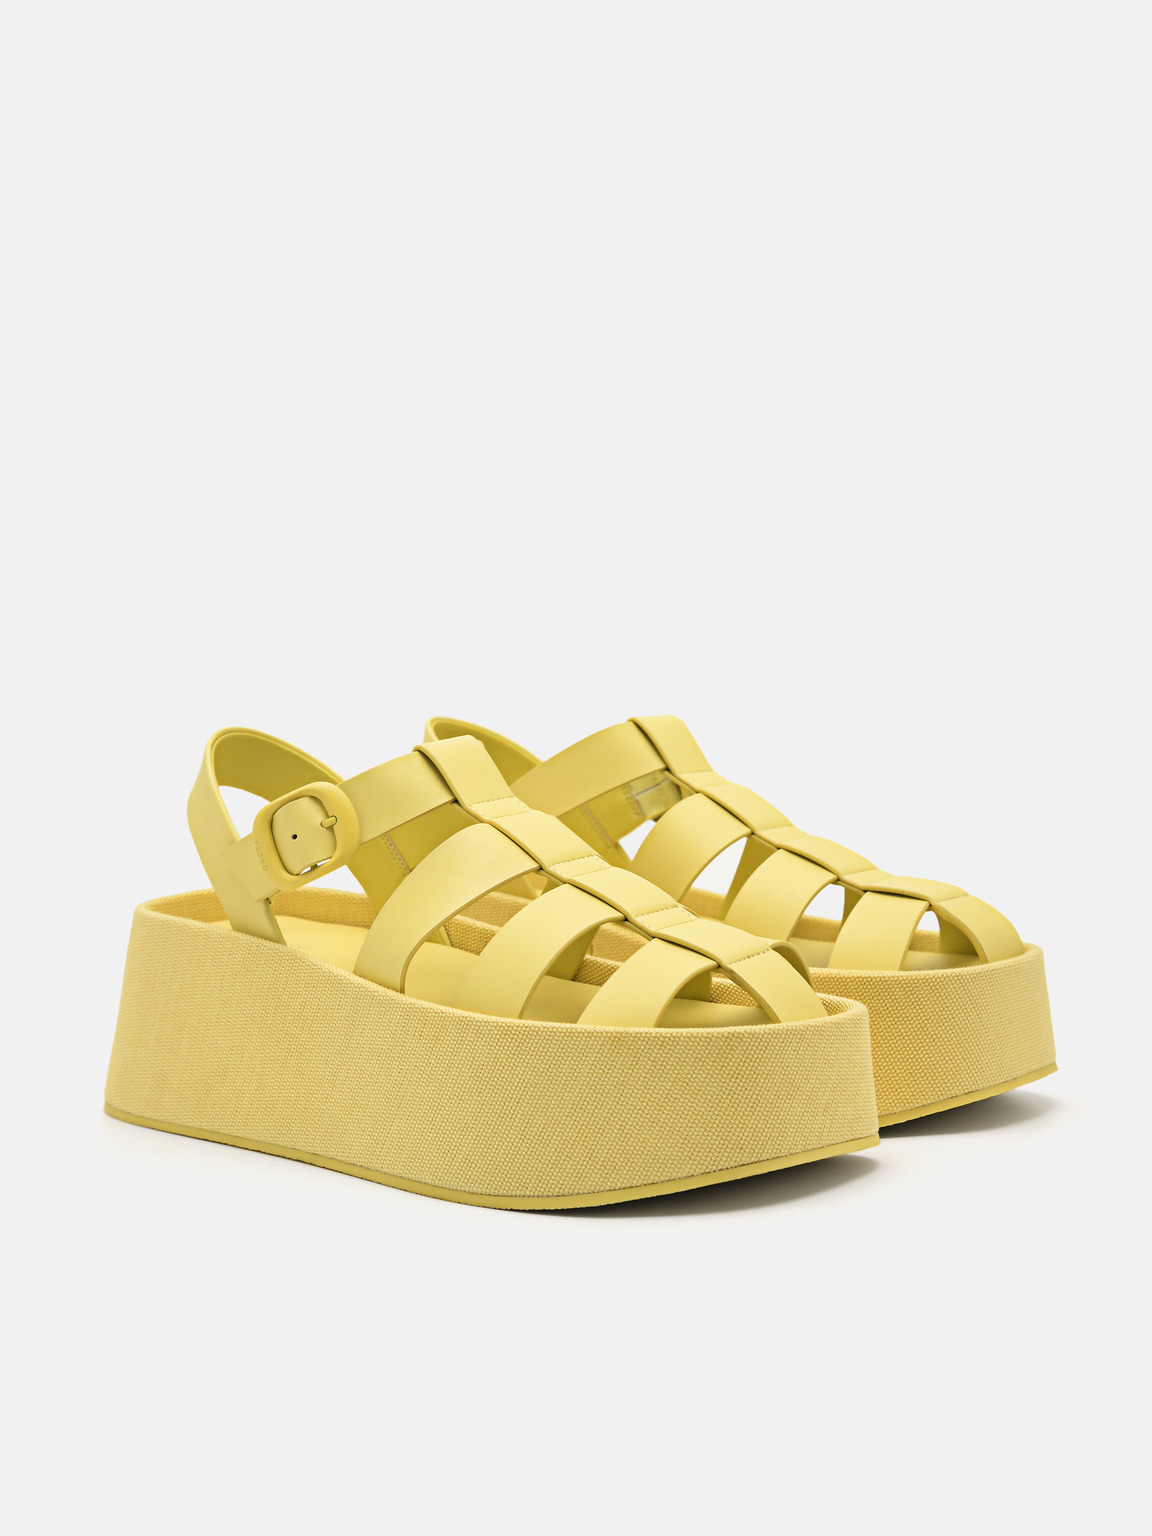 Palma厚底涼鞋, 黄色